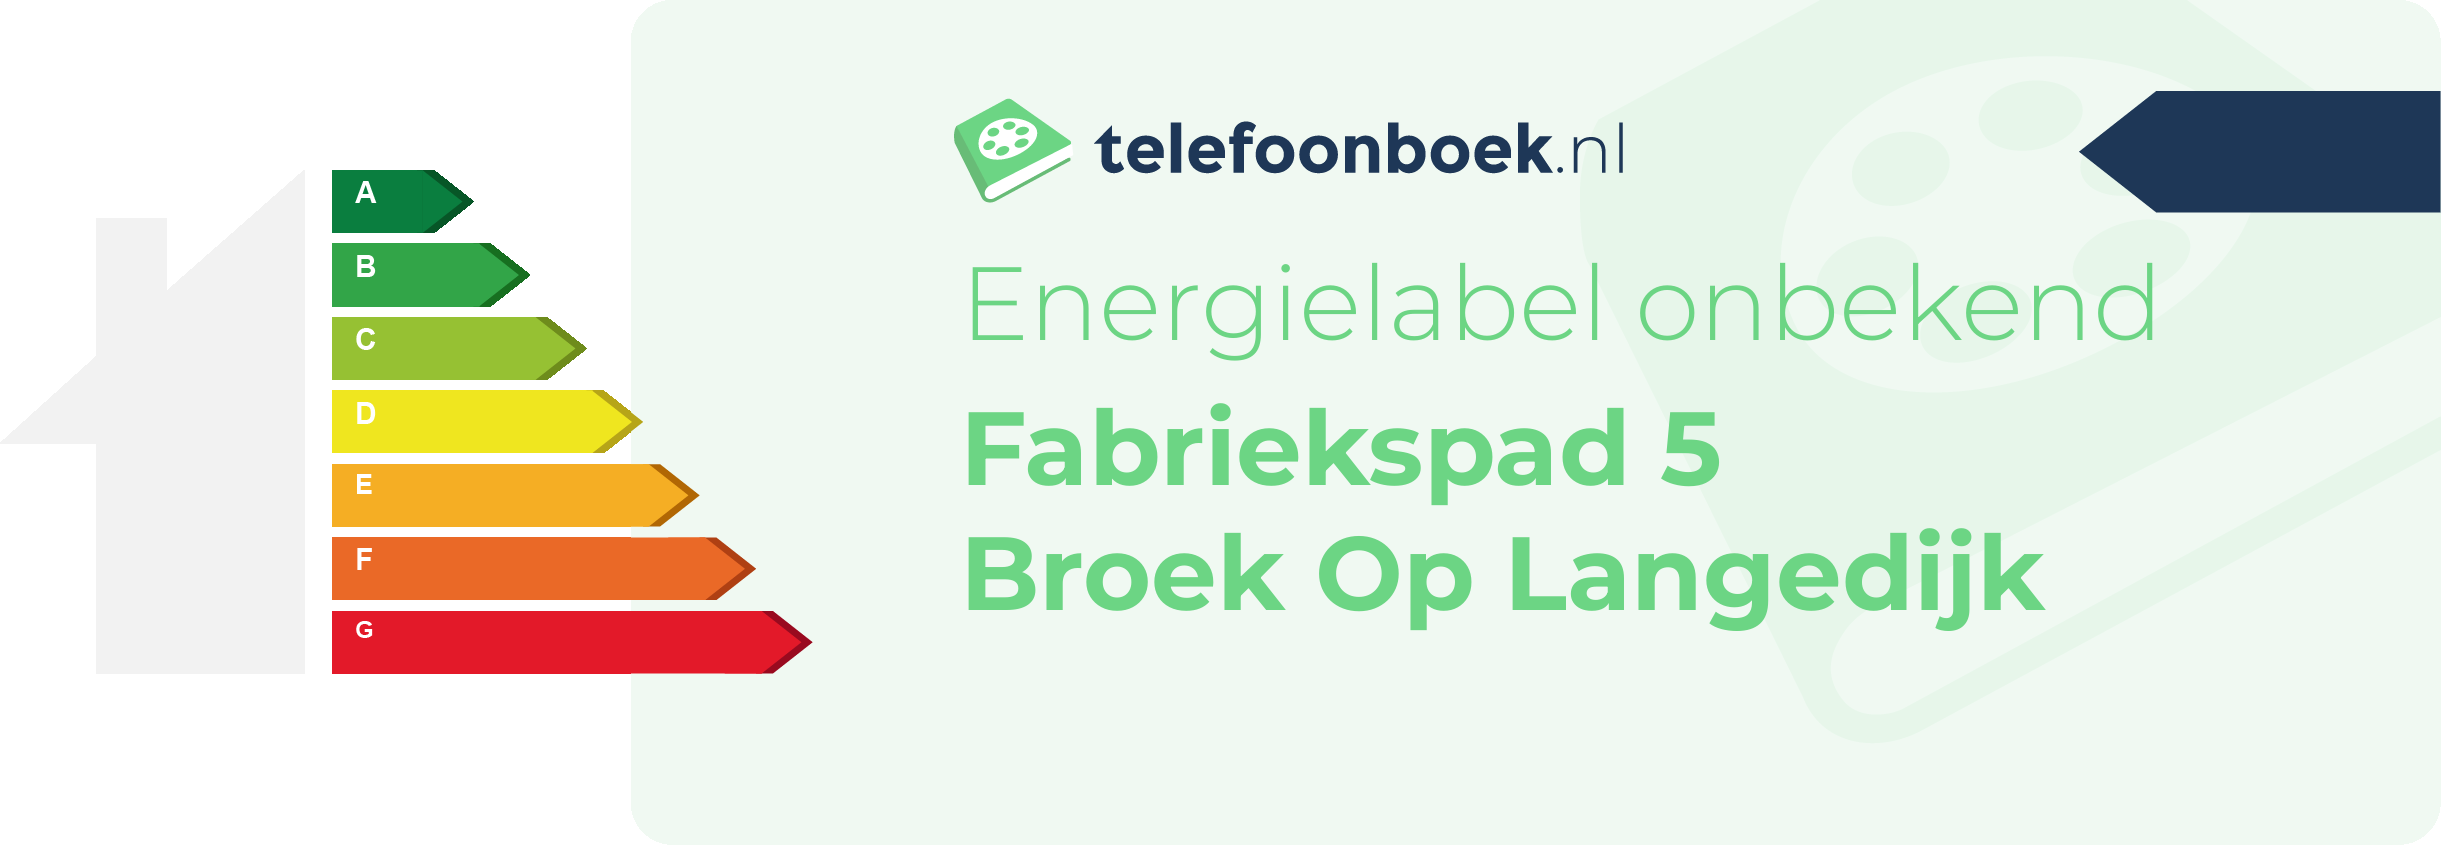 Energielabel Fabriekspad 5 Broek Op Langedijk